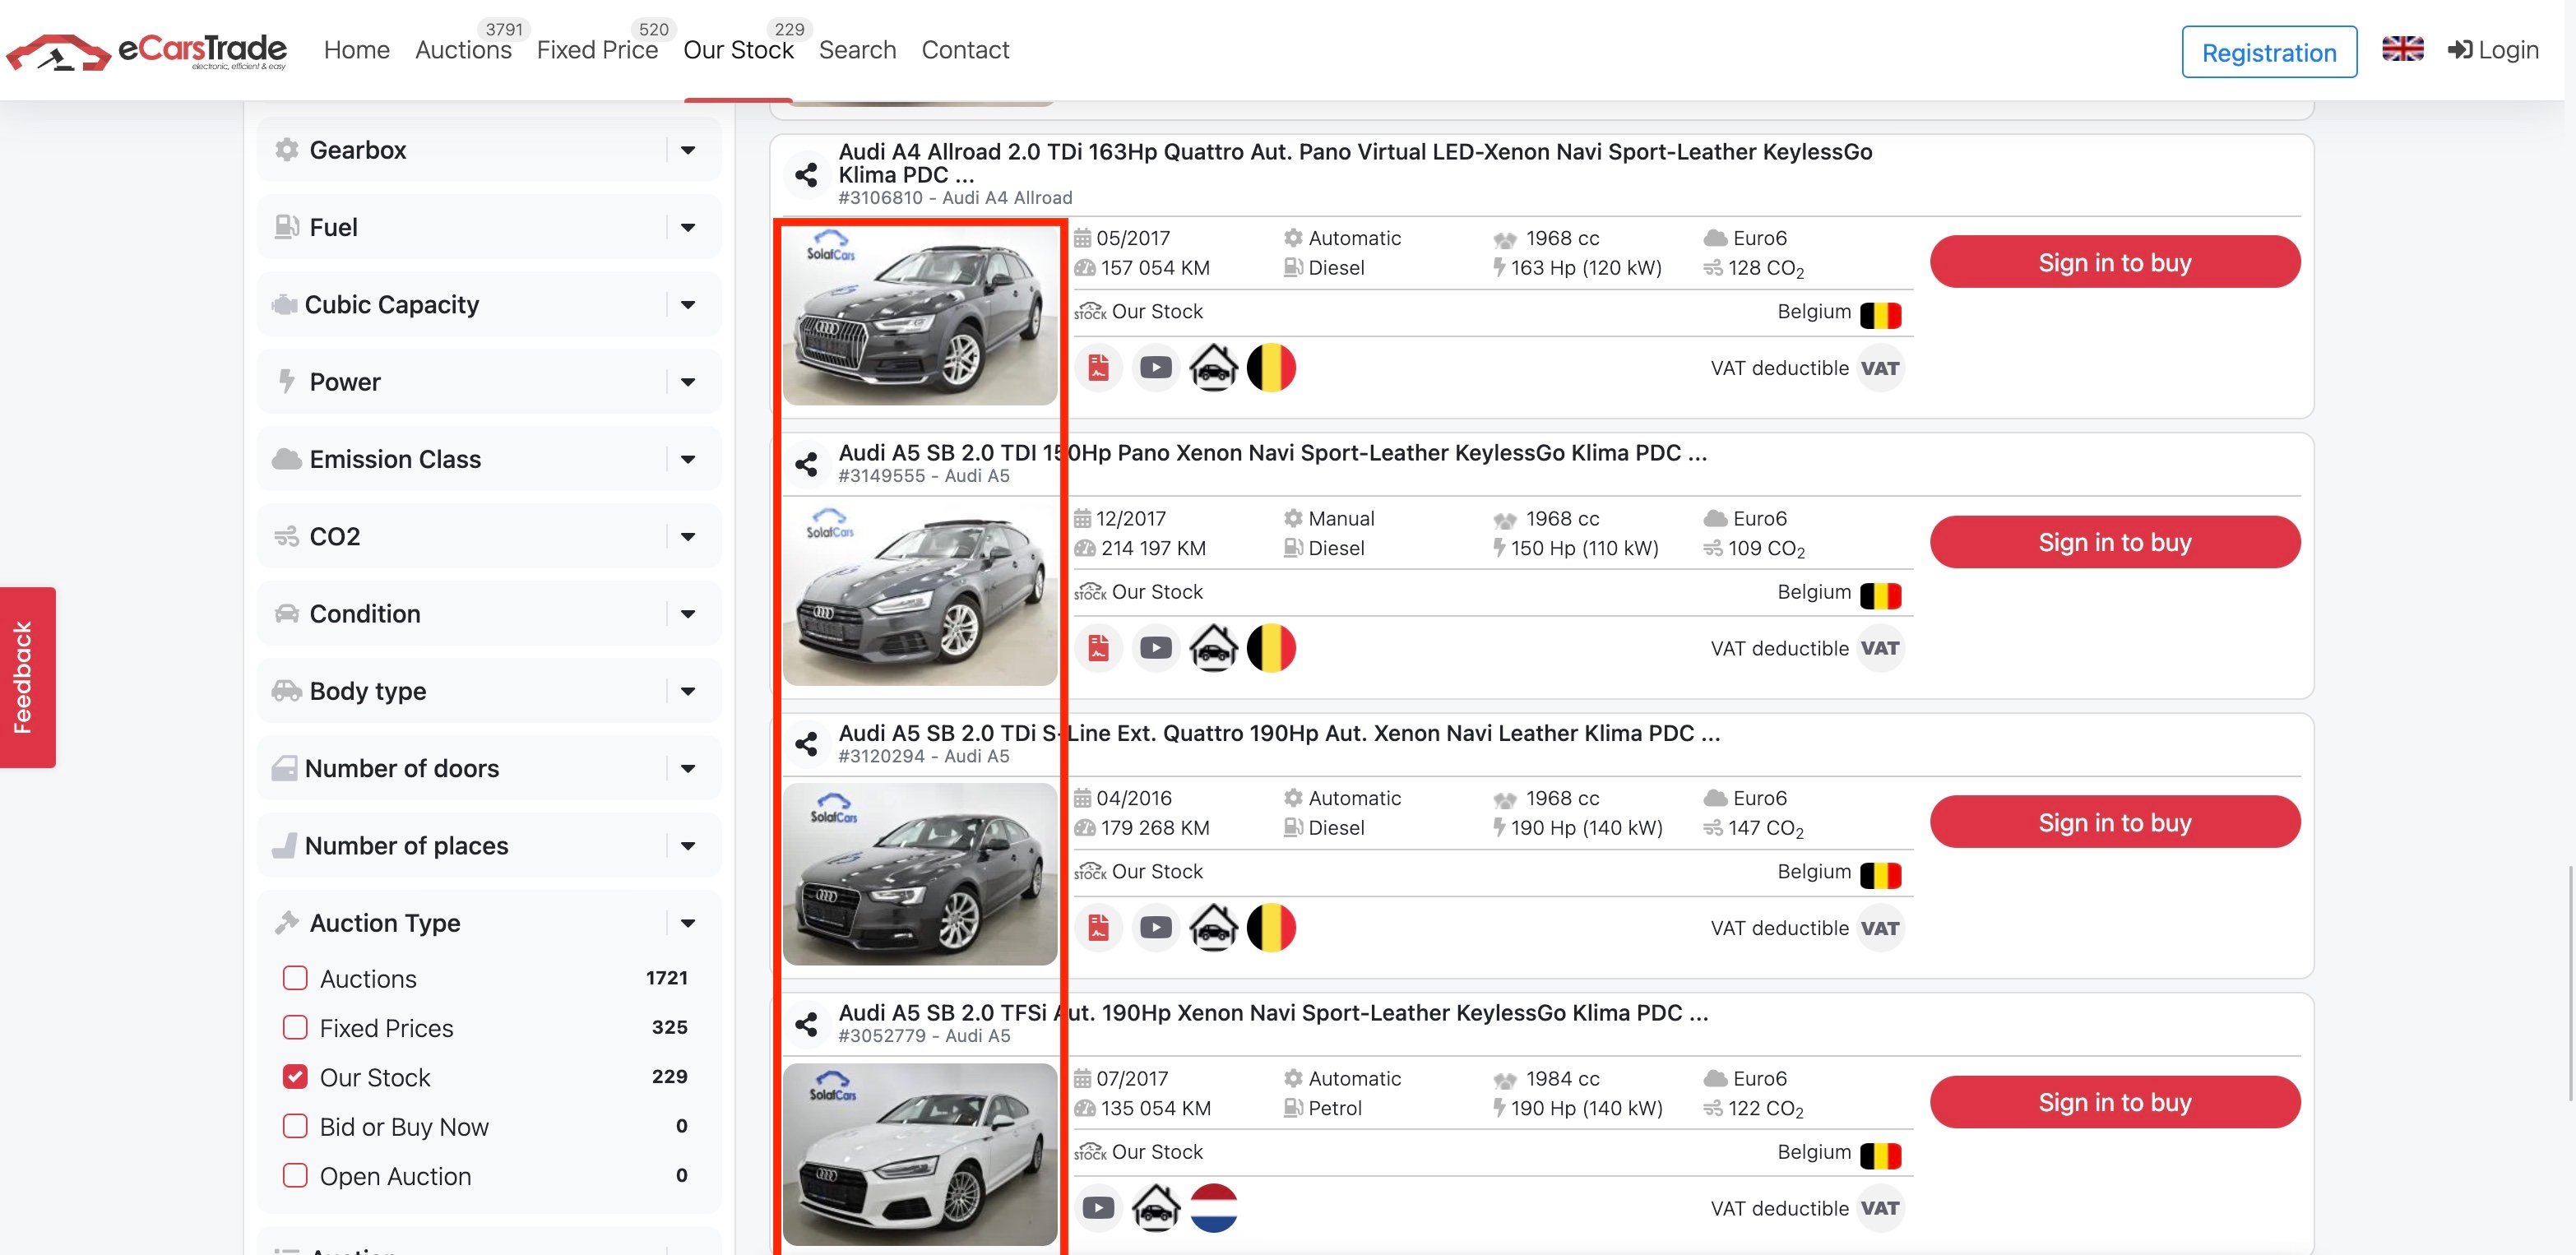 Zrzut ekranu eCarsTrade ze strony internetowej pokazującej zdjęcia samochodów